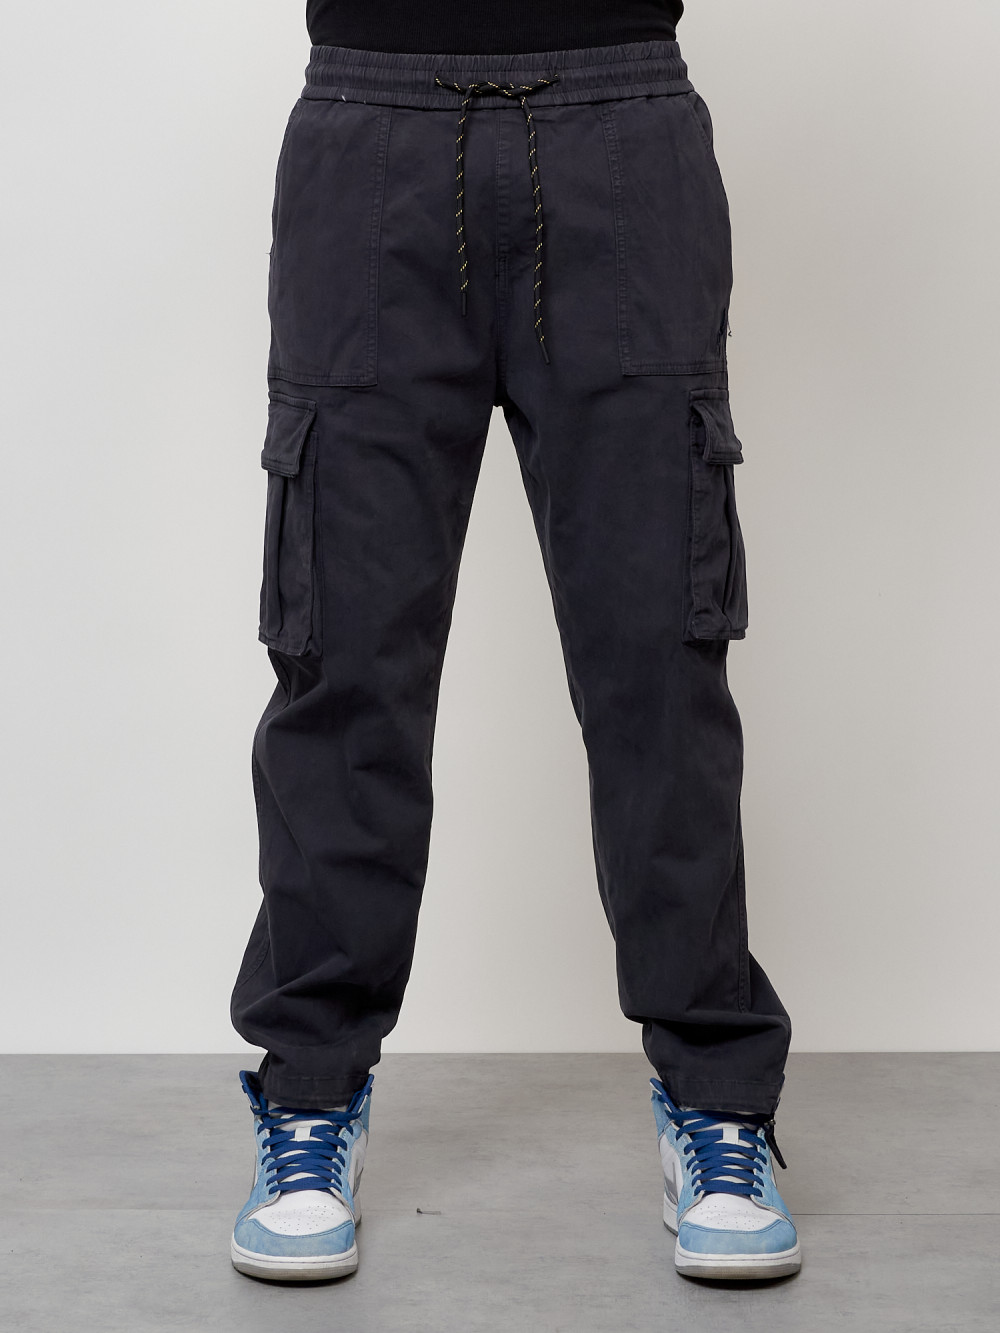 Джинсы карго мужские с накладными карманами темно-серого цвета 2424TC